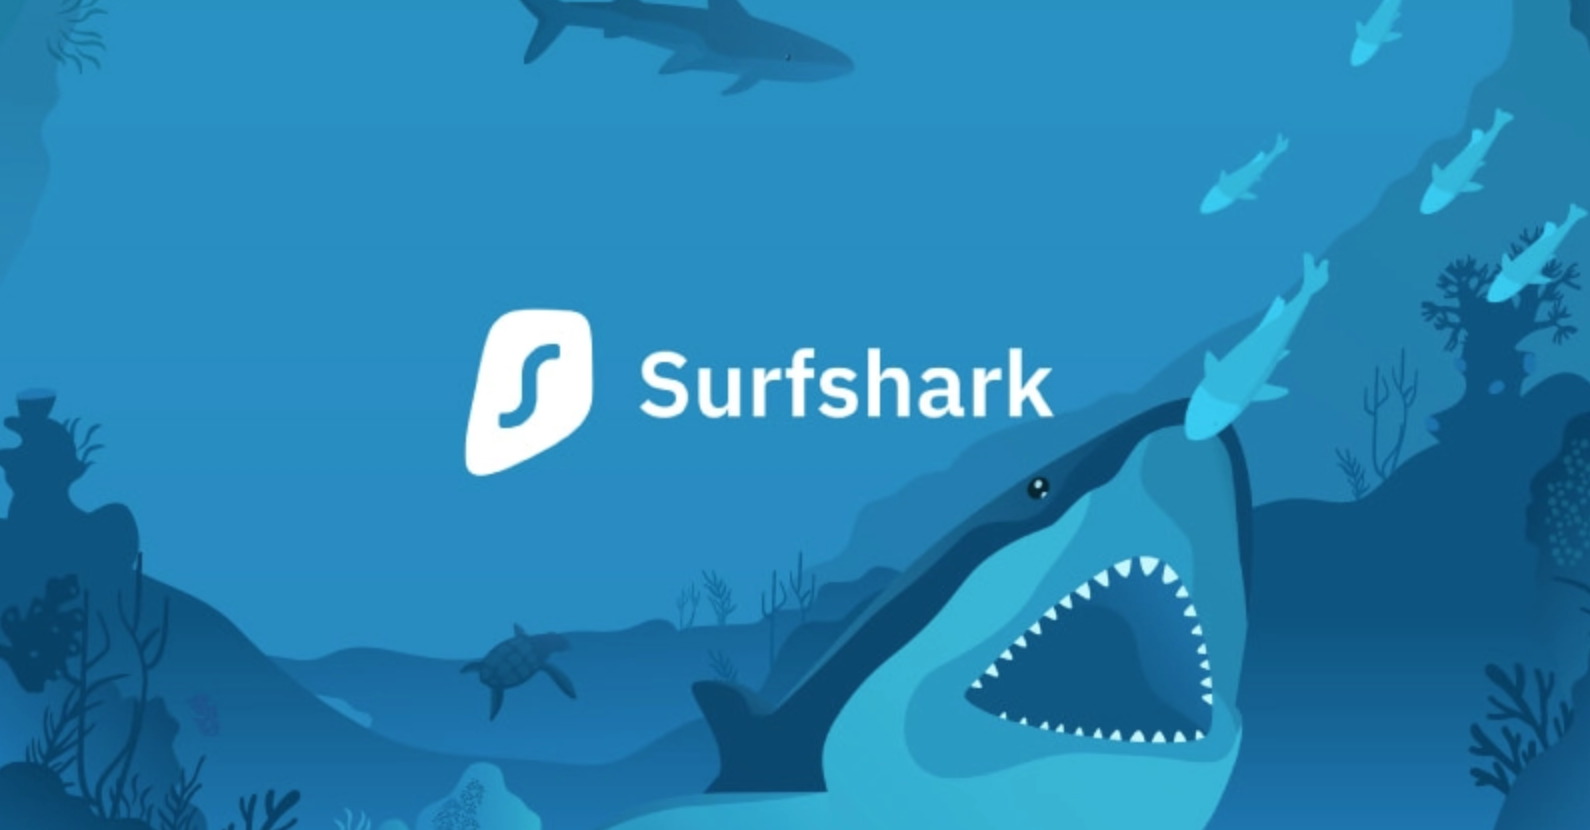 SurfShark Best Gaming VPN